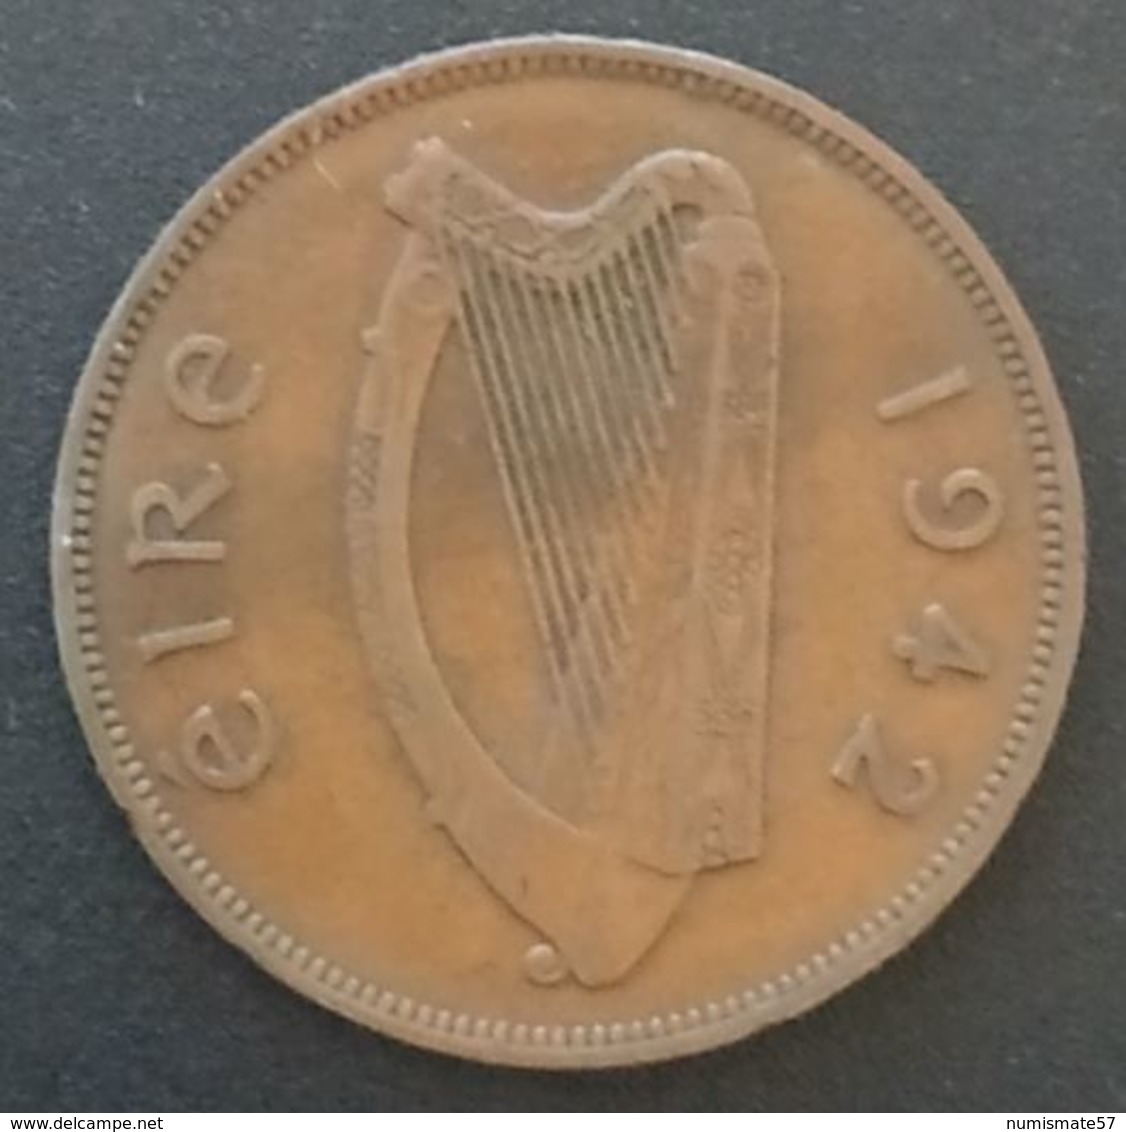 IRLANDE - EIRE - 1 PINGIN 1942 - KM 11 - PENNY - IRELAND - Irlande